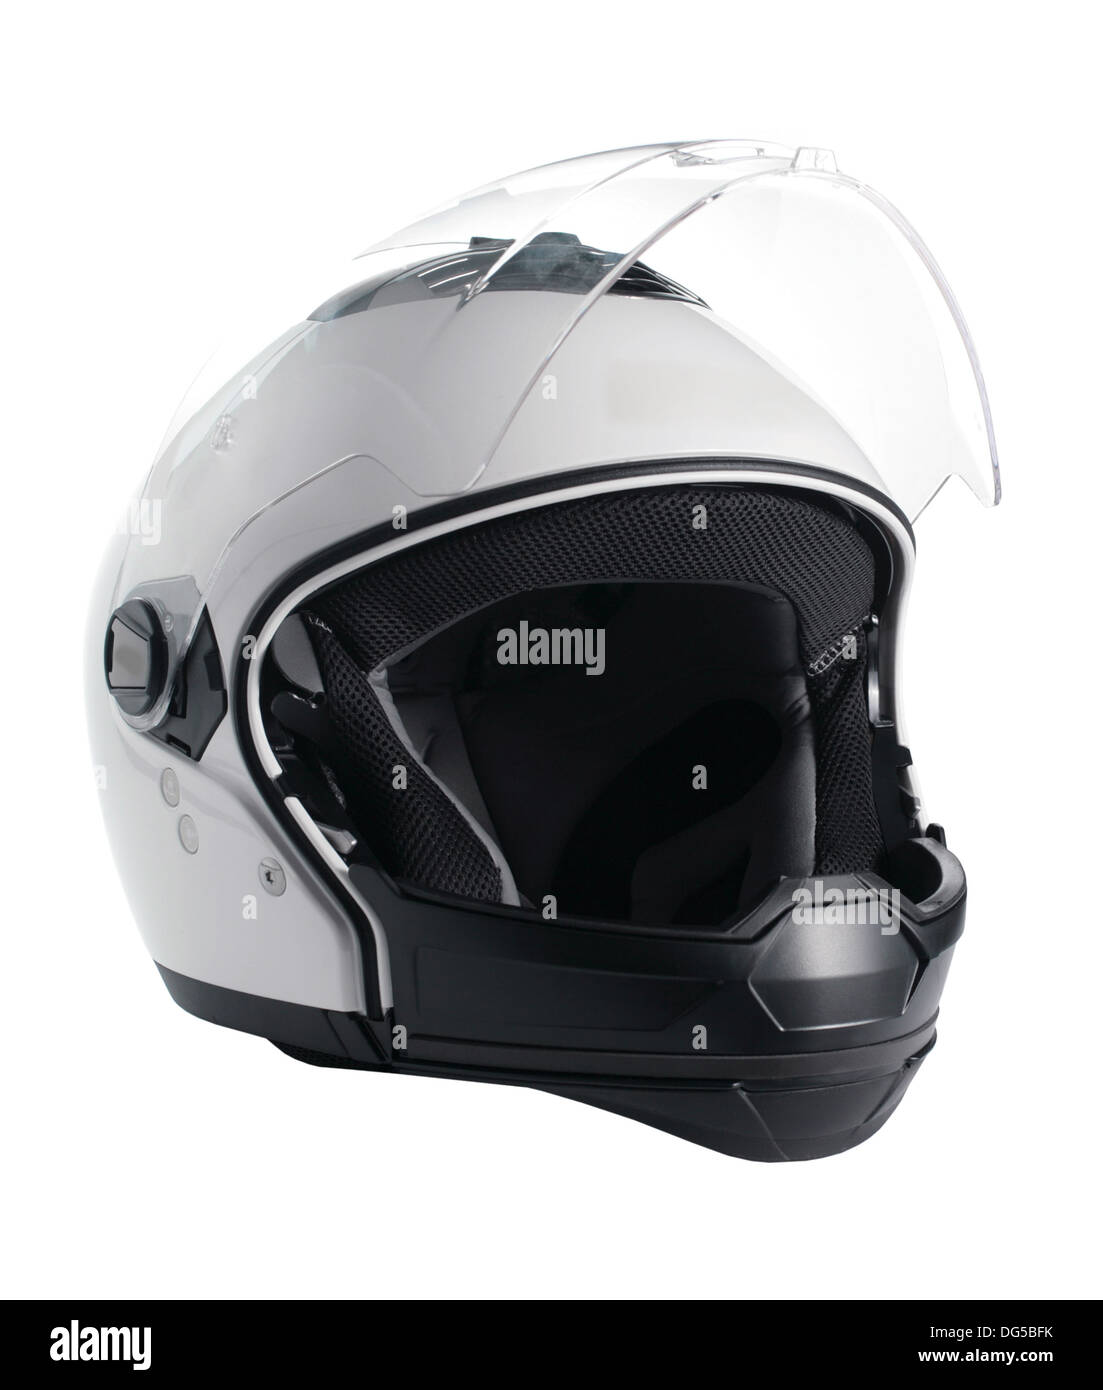 White motorcycle helmet Stock Photo - Alamy